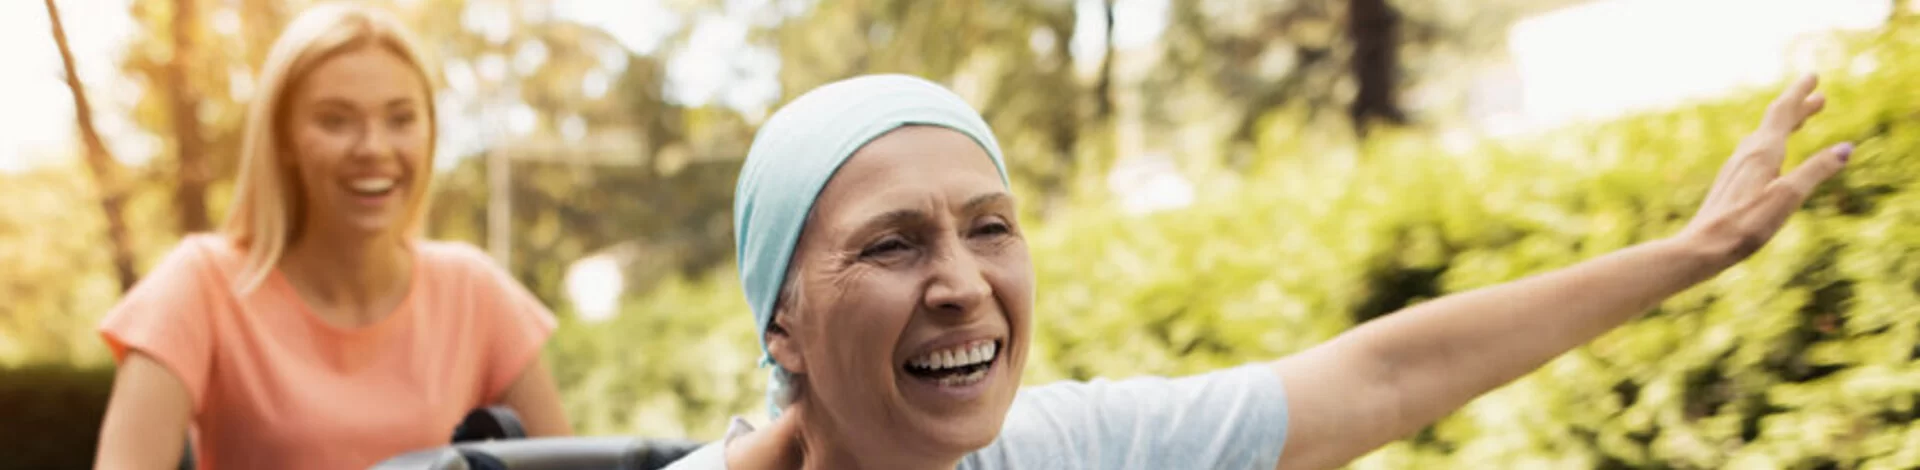 Eine lachende Frau schiebt eine Lungenkrebs-Patientin im Rollstuhl, die glücklich die Arme nach oben streckt.